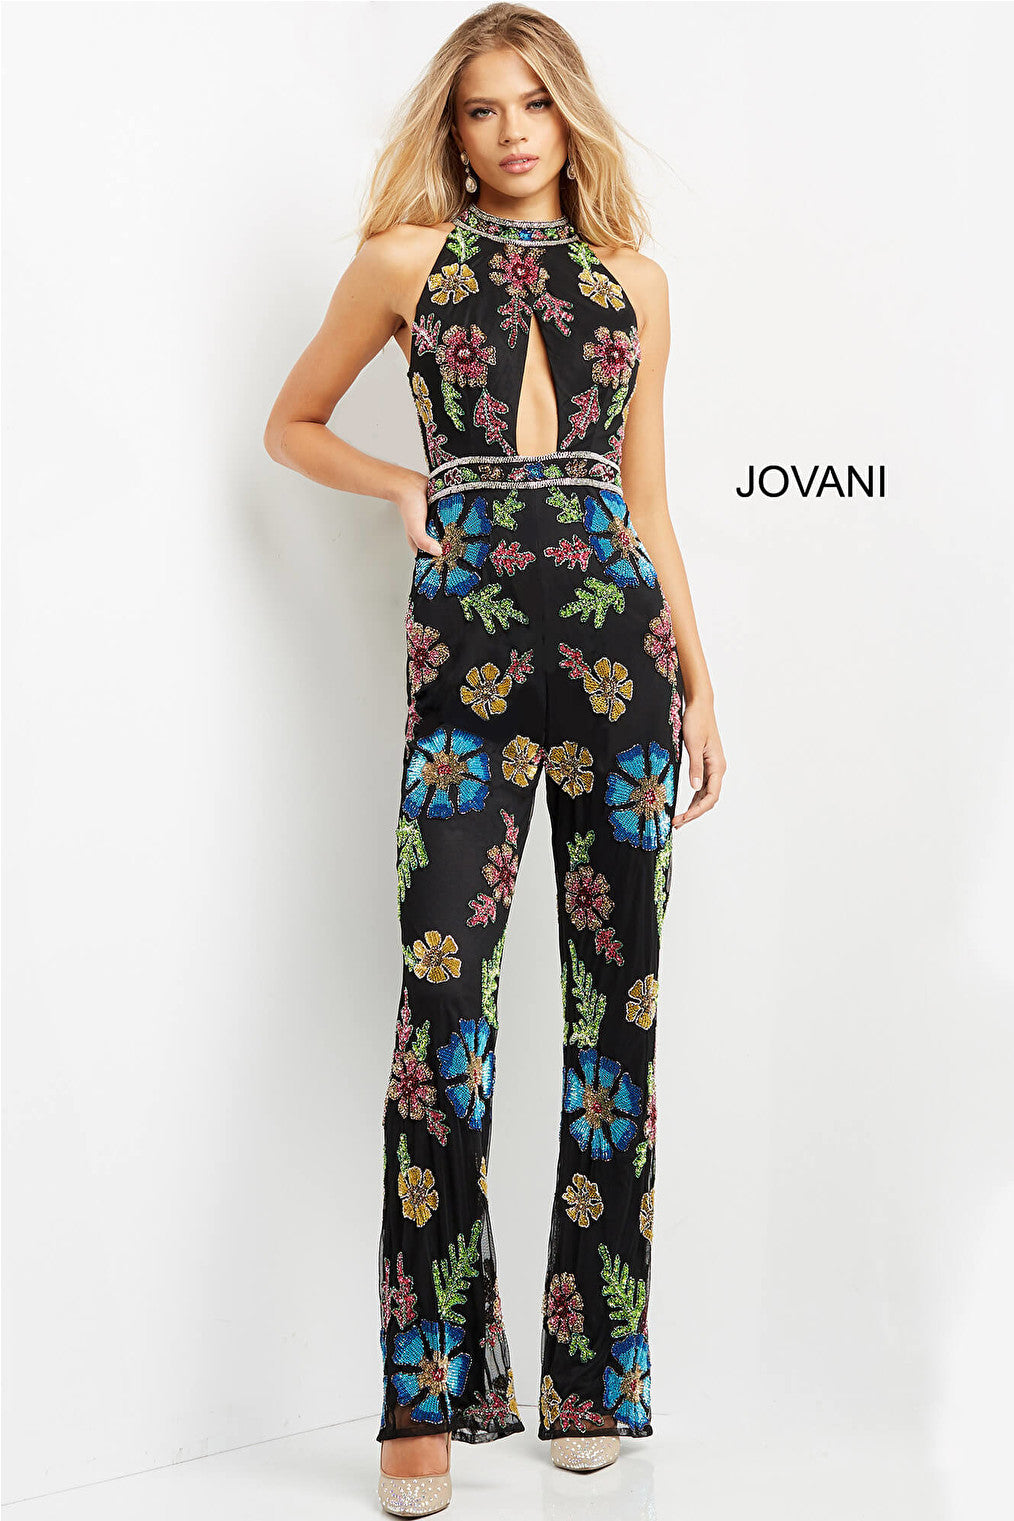 Jovani 09024 Black Multi Embellished High Neck Jumpsuit